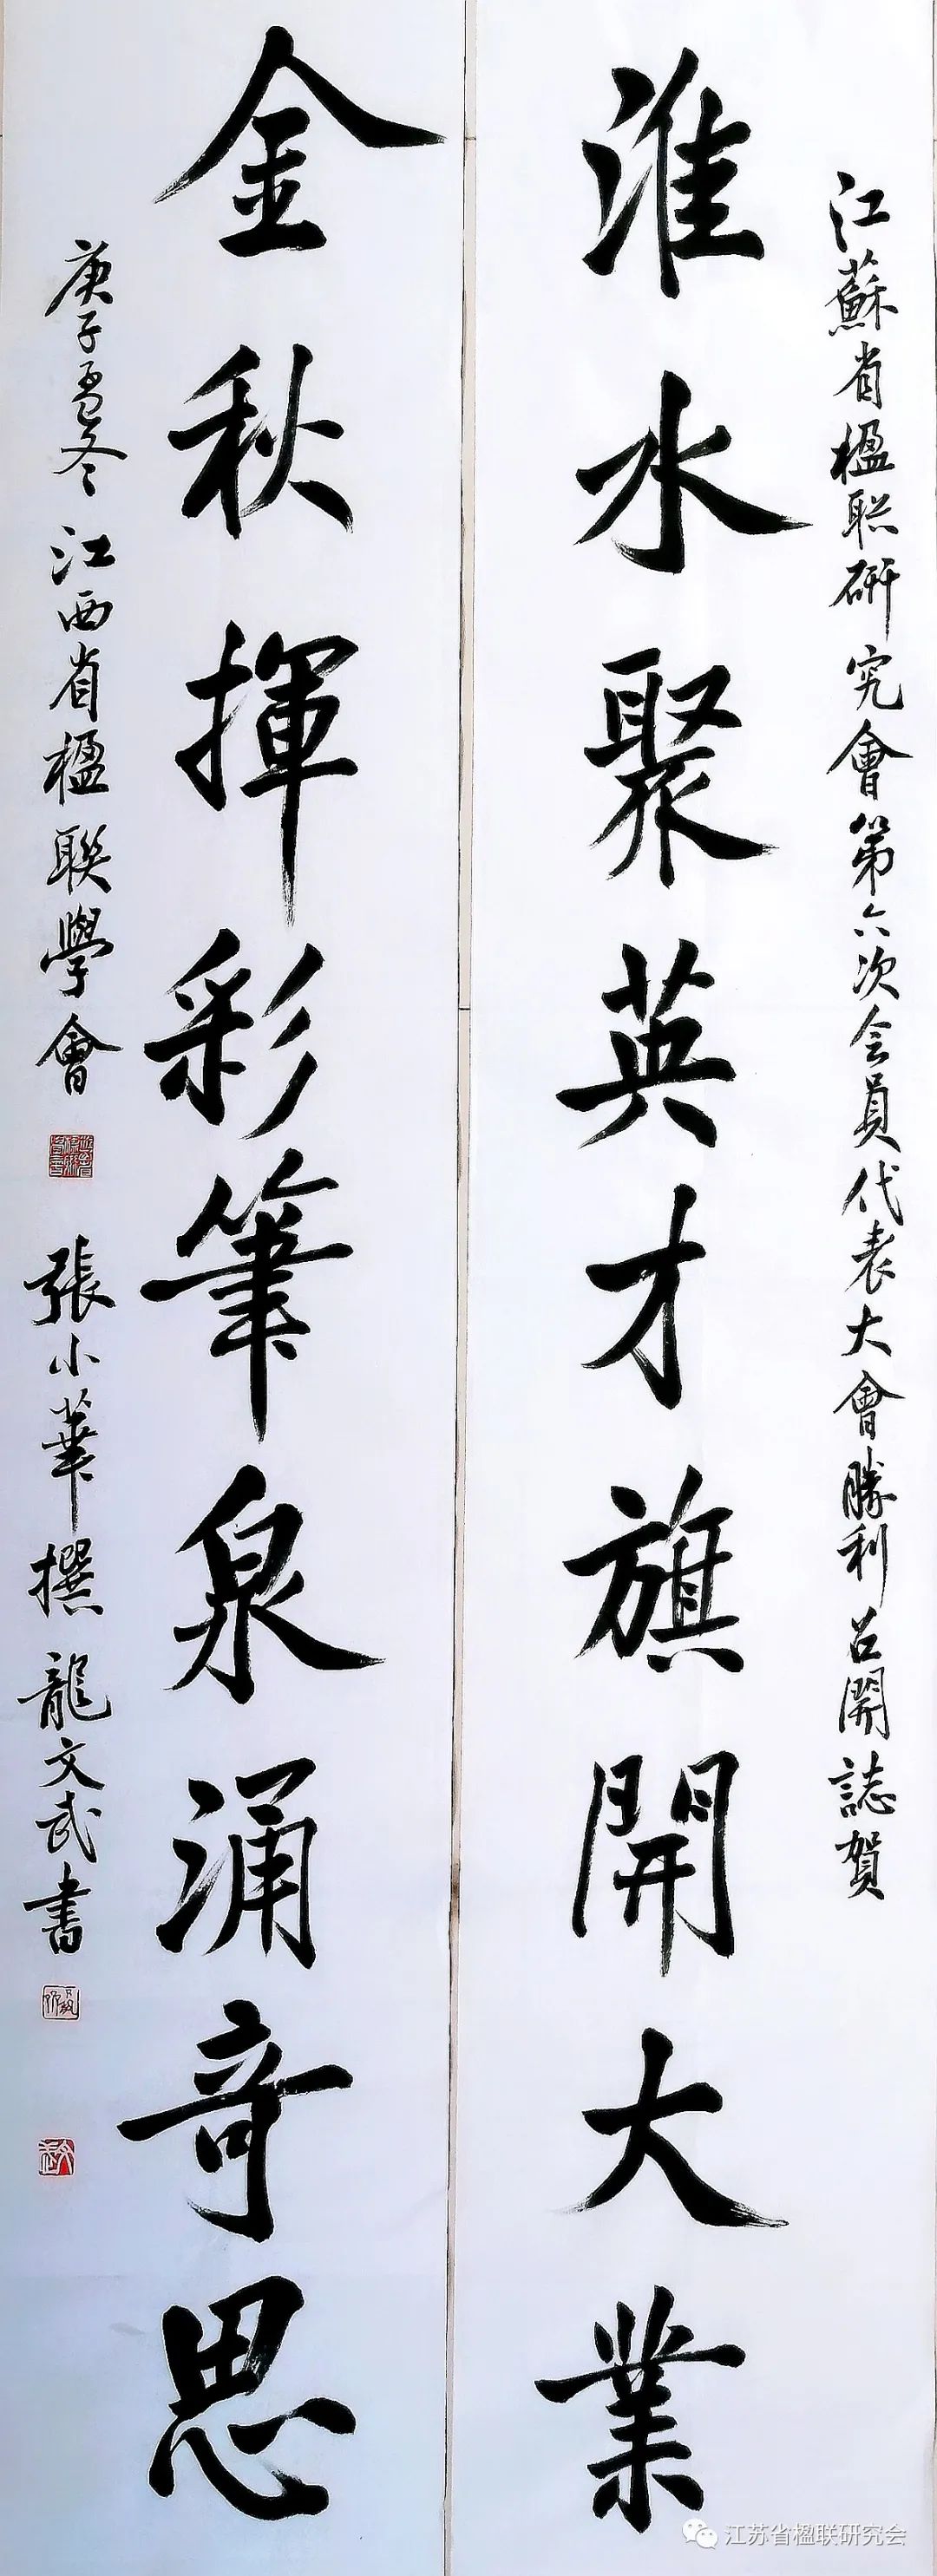 鲁晓川书法图片